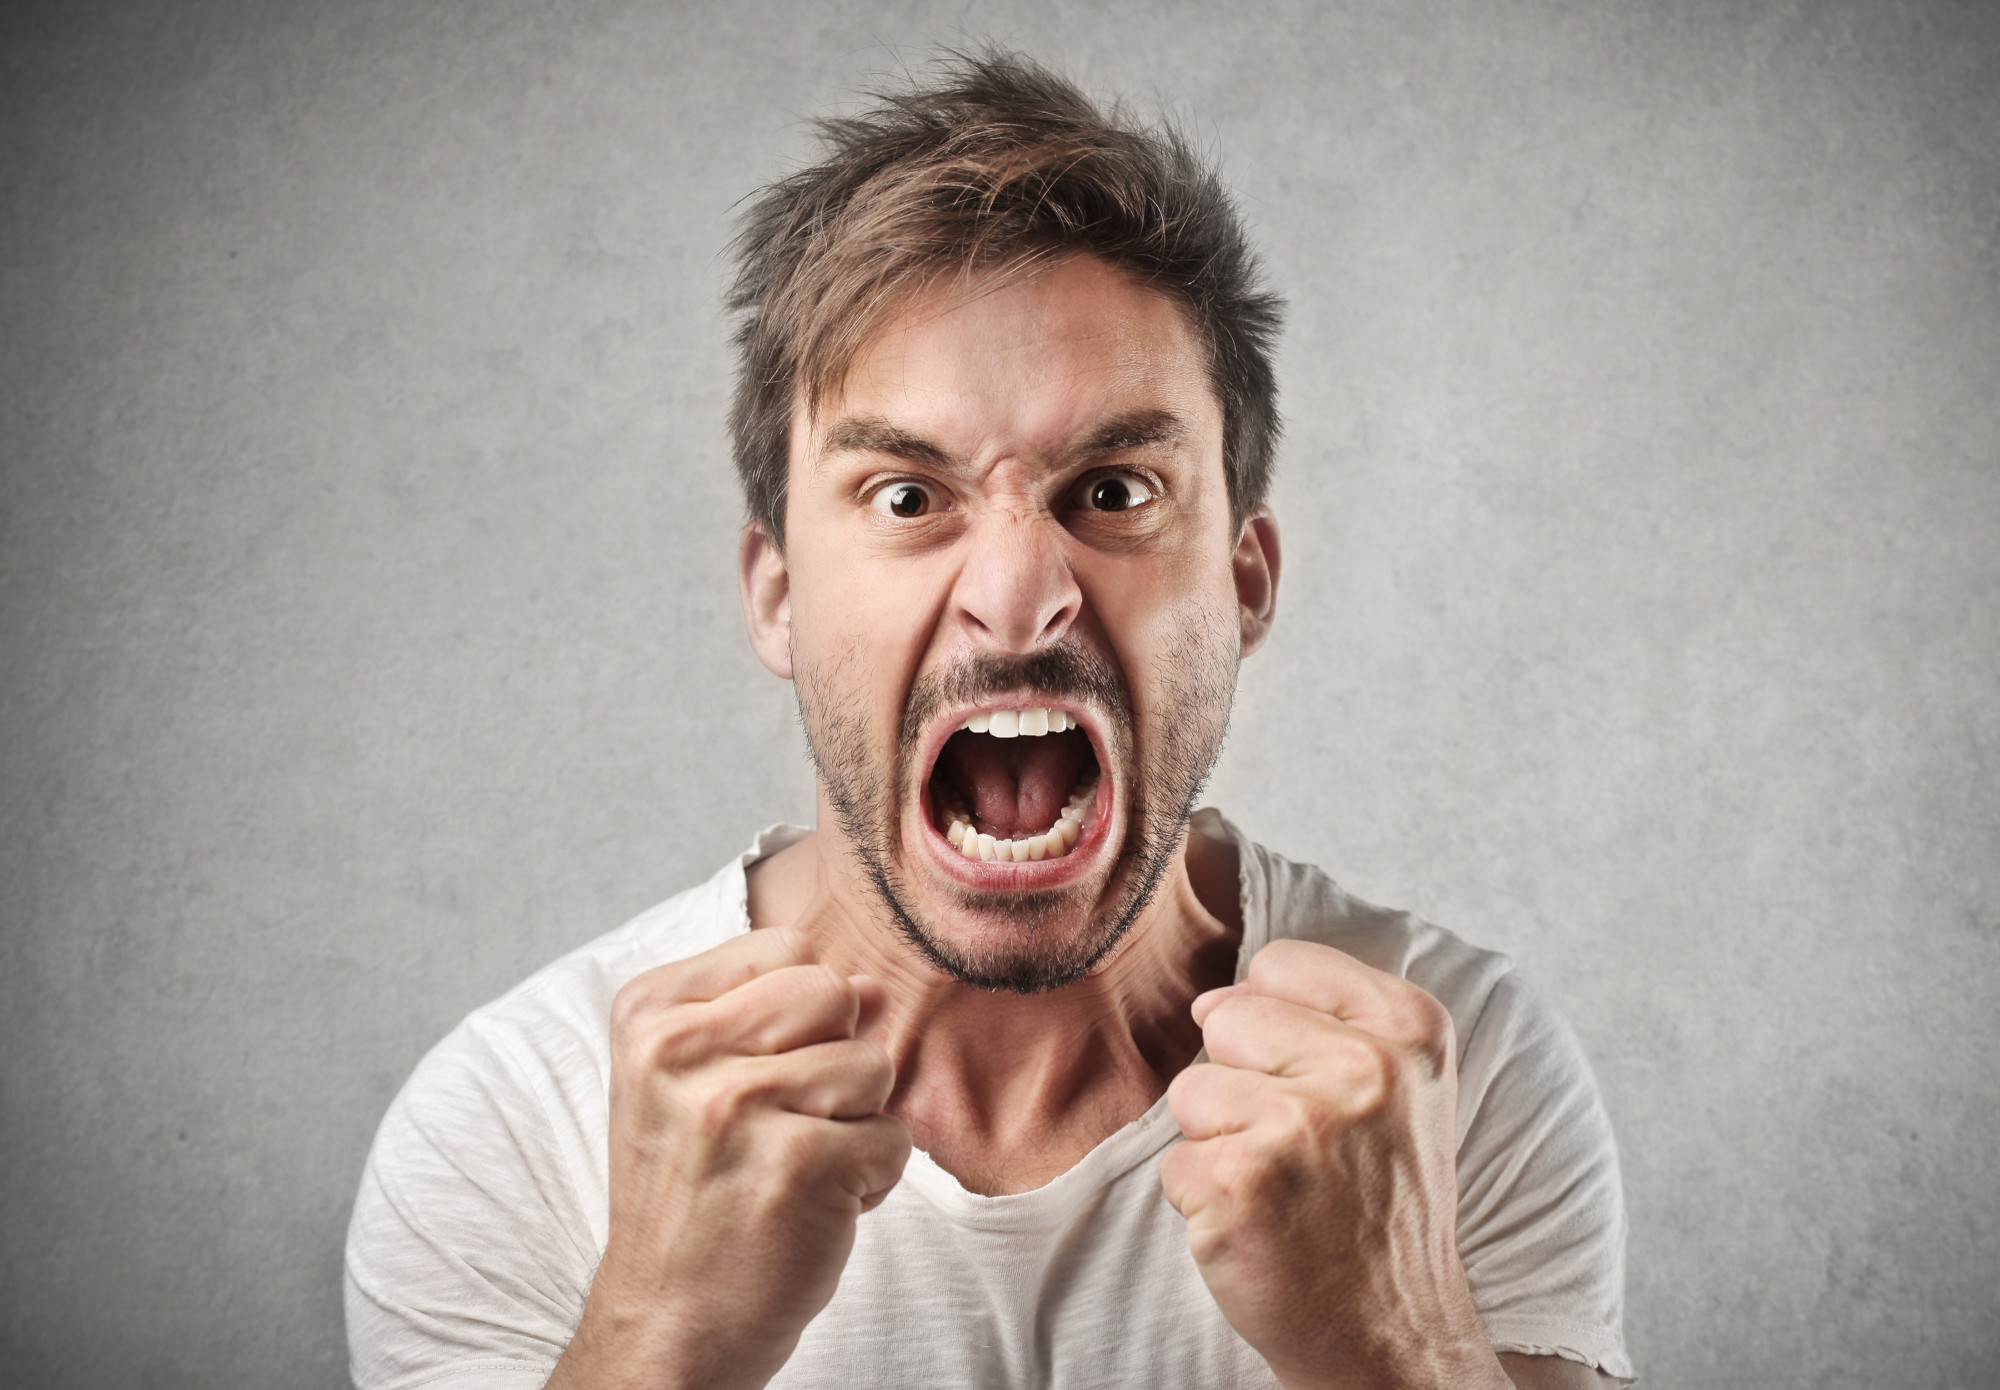 Yπάρχει τρόπος να διαχειριστείτε το θυμό σας;